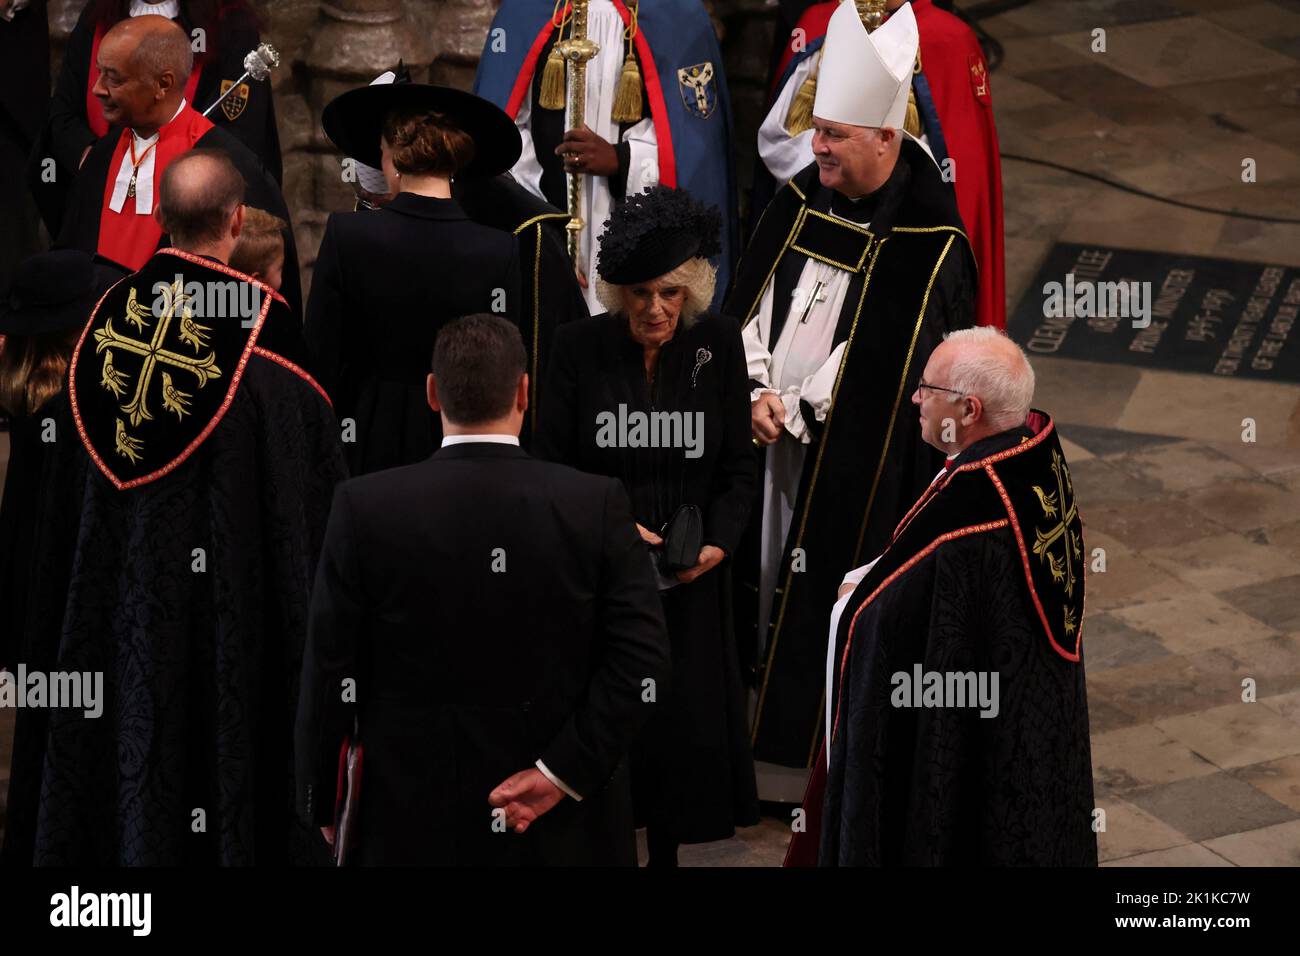 Der Queen Consort kommt am State Funeral von Queen Elizabeth II an, das in Westminster Abbey, London, stattfindet. Bilddatum: Montag, 19. September 2022. Stockfoto